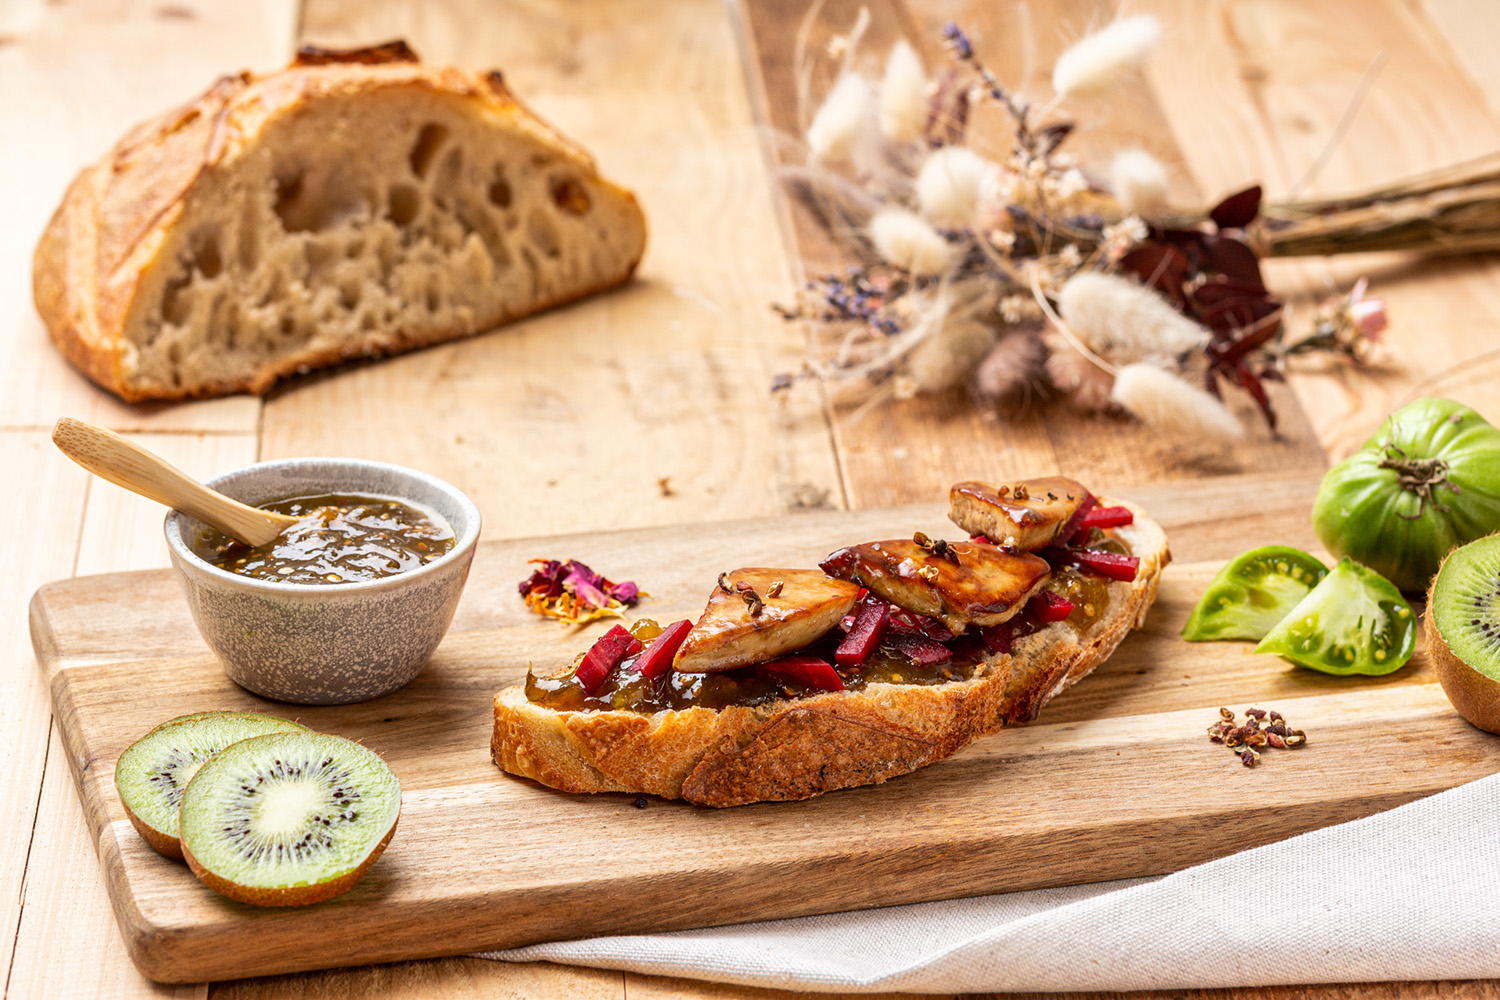 Photographie culinaire d'une tartine de foie gras avec du kiwi pris en photo par Antoine Heusse, photographie culinaire